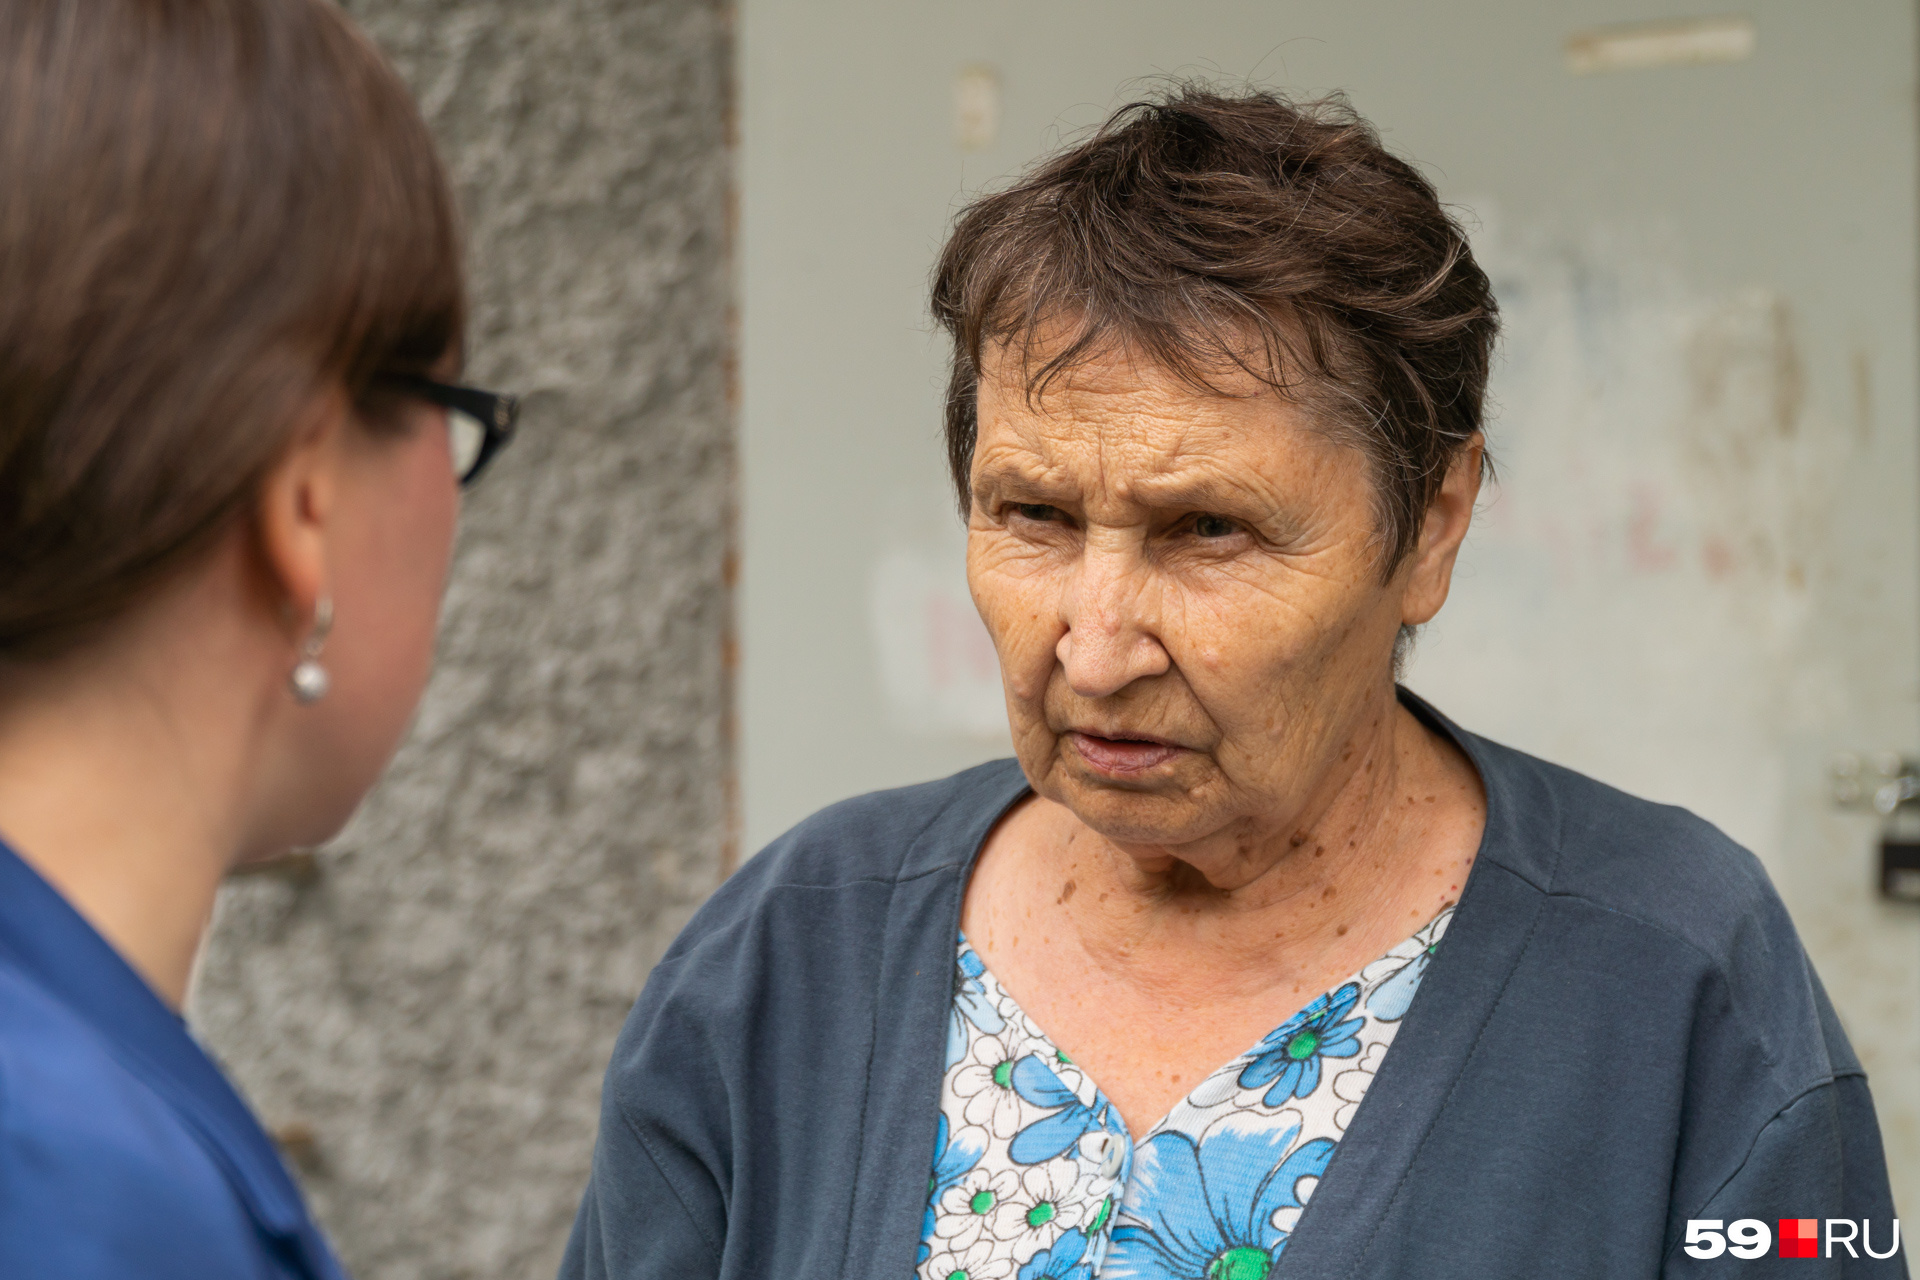 Соседка Валентина Соколова рассказала, кто живет в квартире, указанной в объяснительной пенсионерки